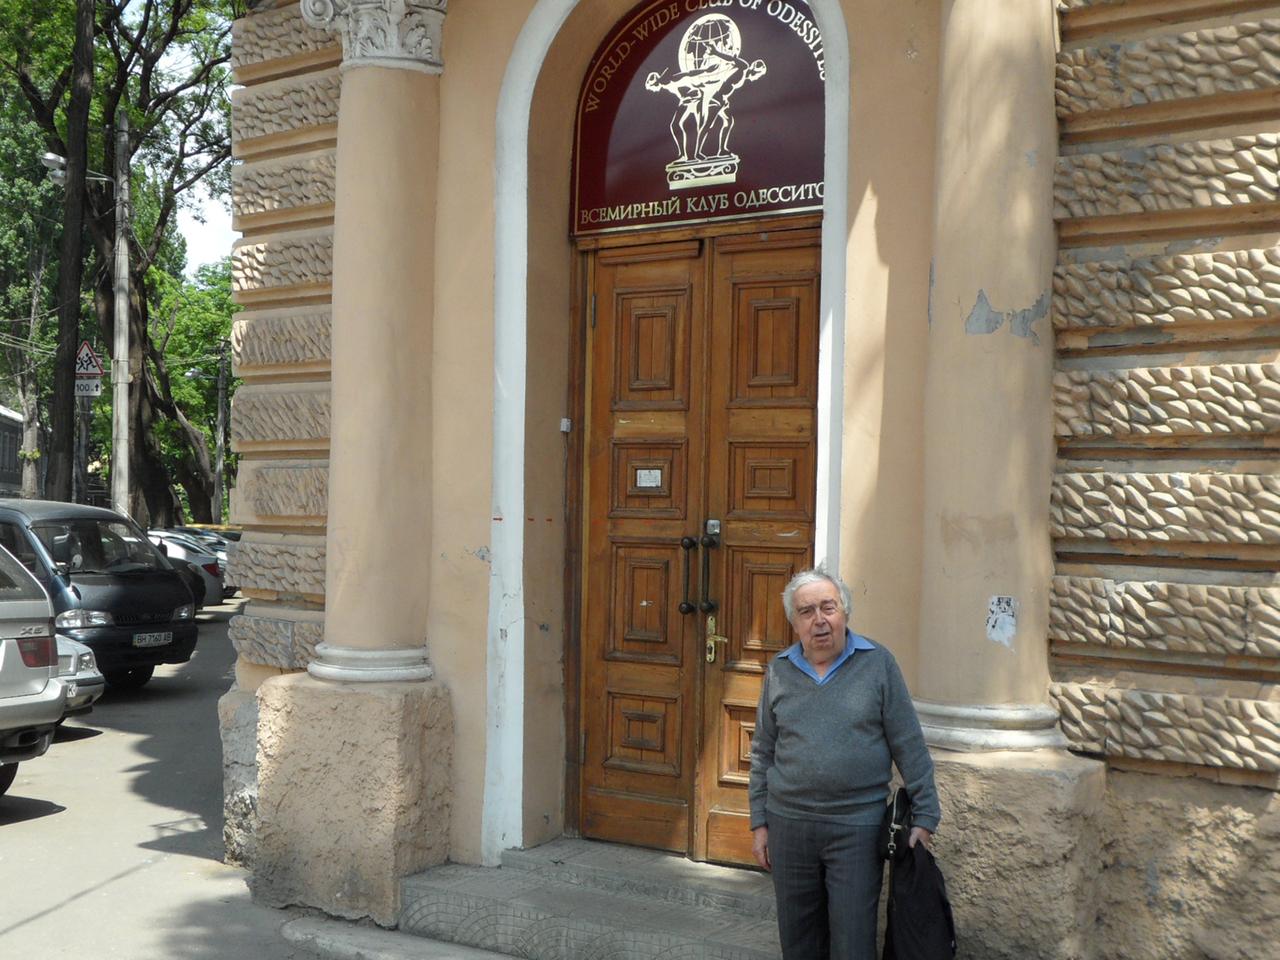 Ein Bewohner Odessas in seiner Heimatstadt.